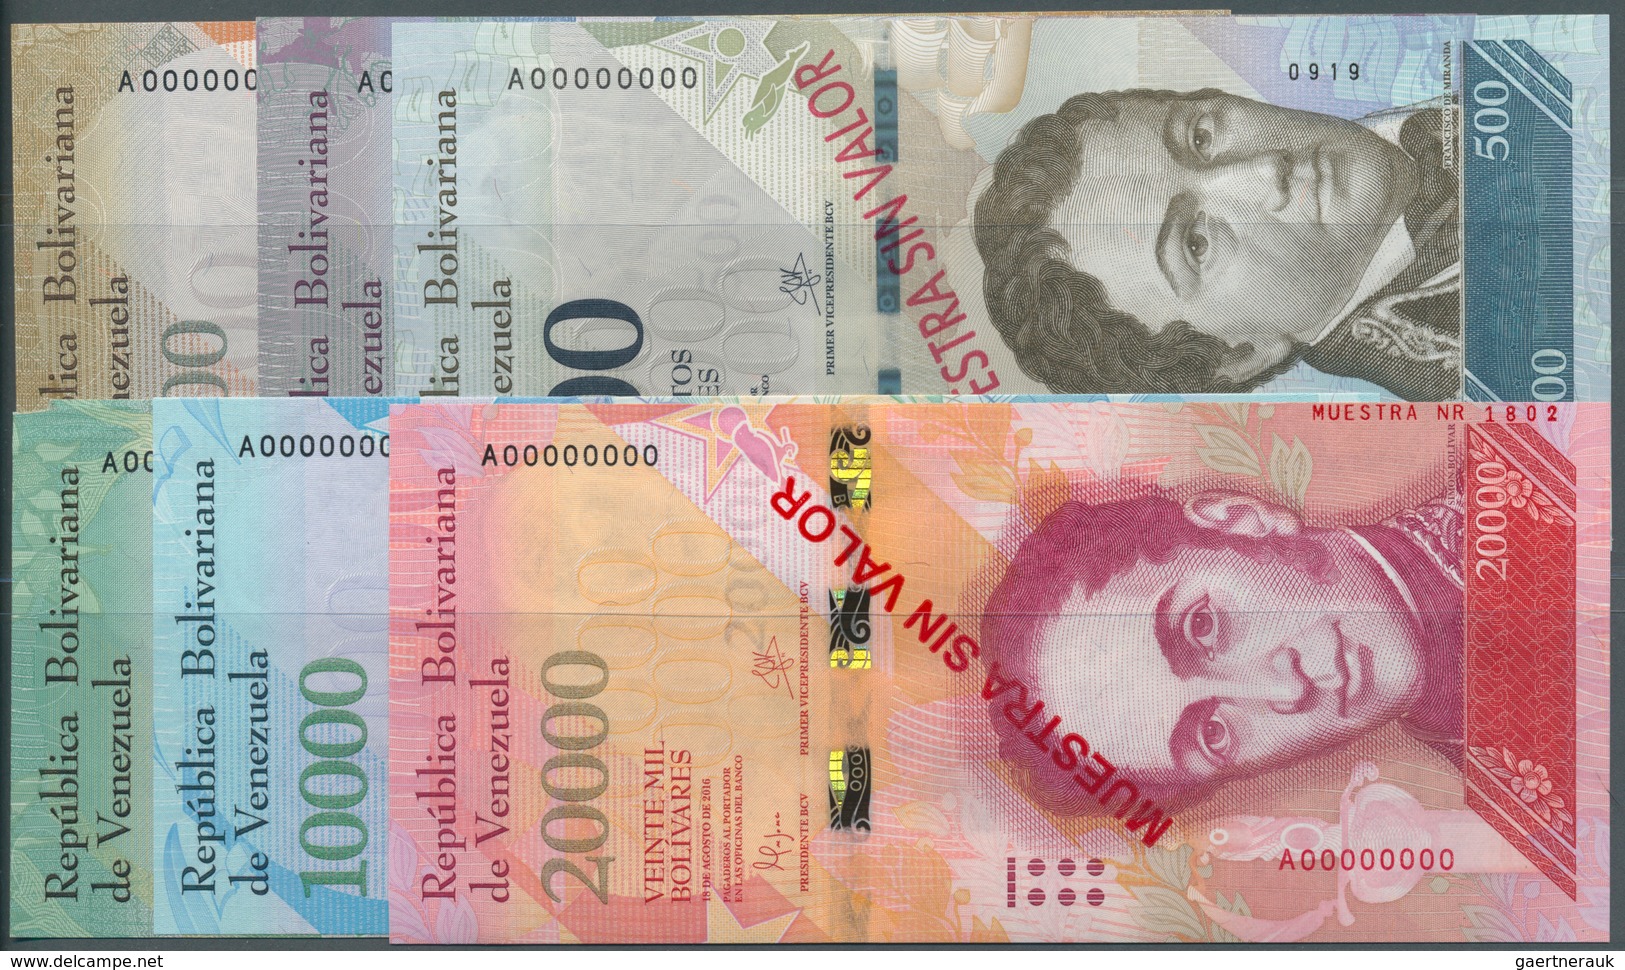 02610 Venezuela: Specimen Set With 6 Notes 500, 1000, 2000, 5000, 10.000 And 20.000 Bolivares Specimen 201 - Venezuela